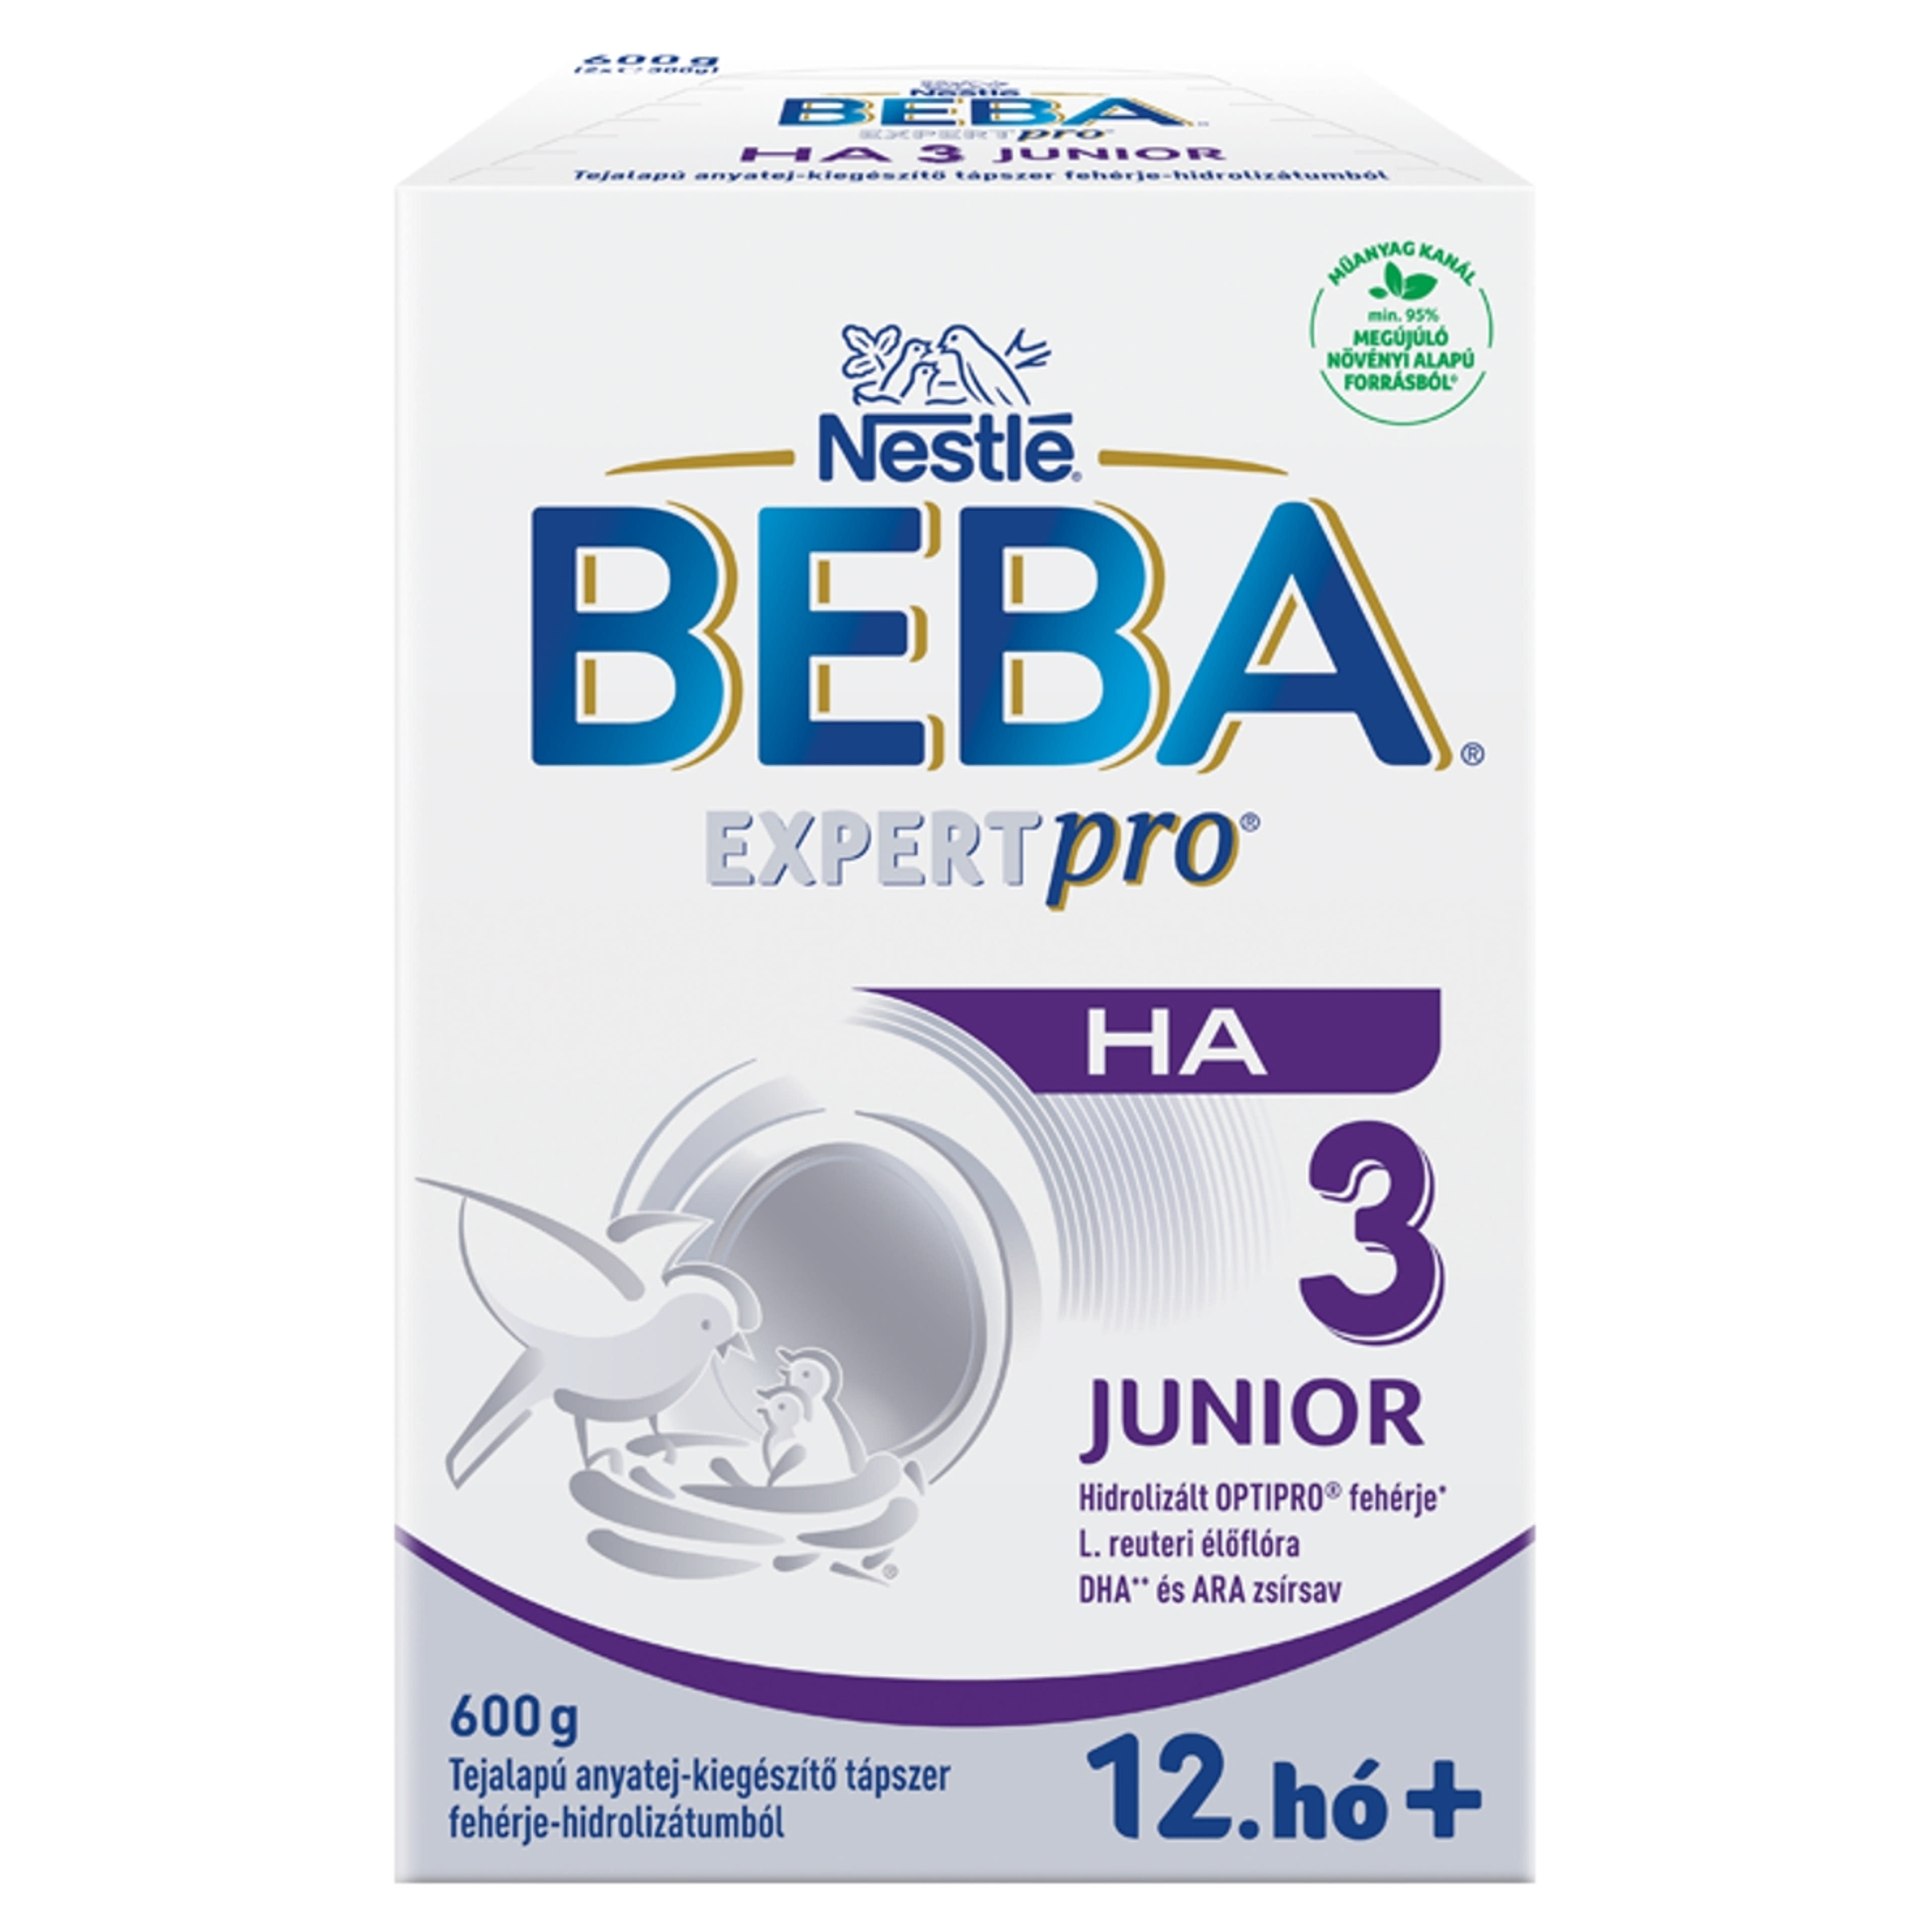 Beba Expertpro HA 3 Junior tejalapú anyatej-kiegészítő tápszer fehérje-hidrolizátumból 12.hónapos kortól - 600 g